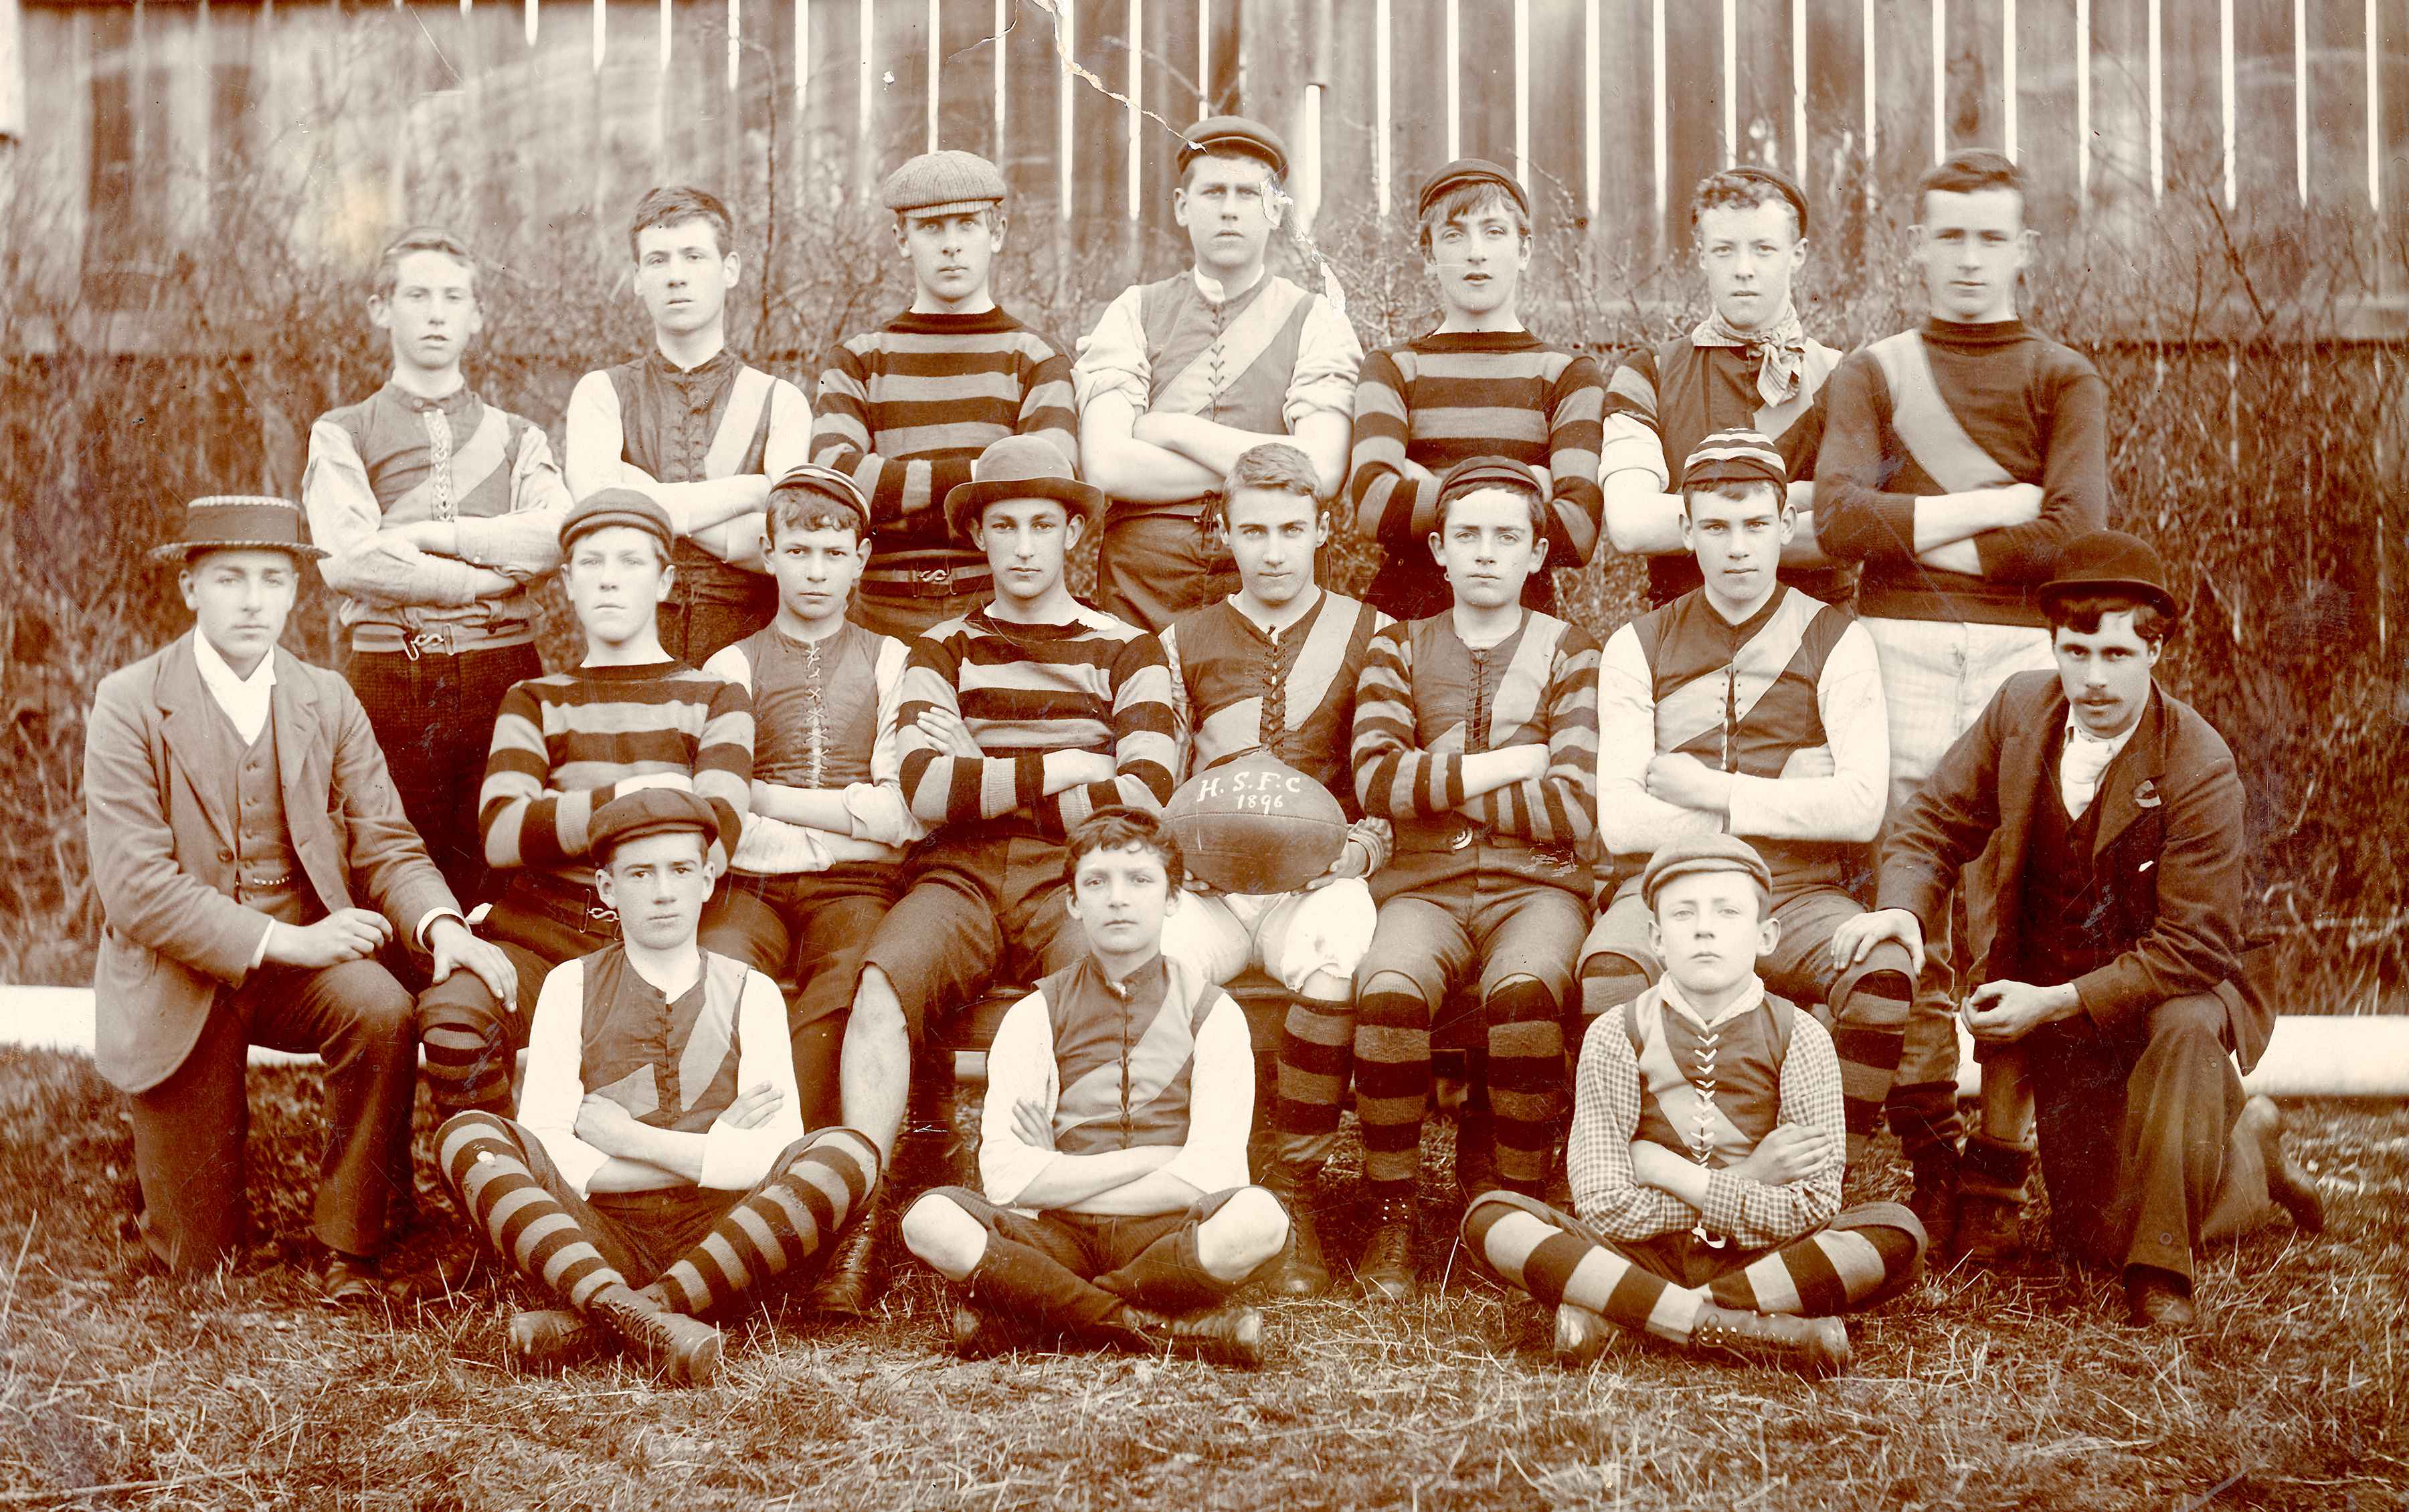 Hutchins School Football Club, 1896.